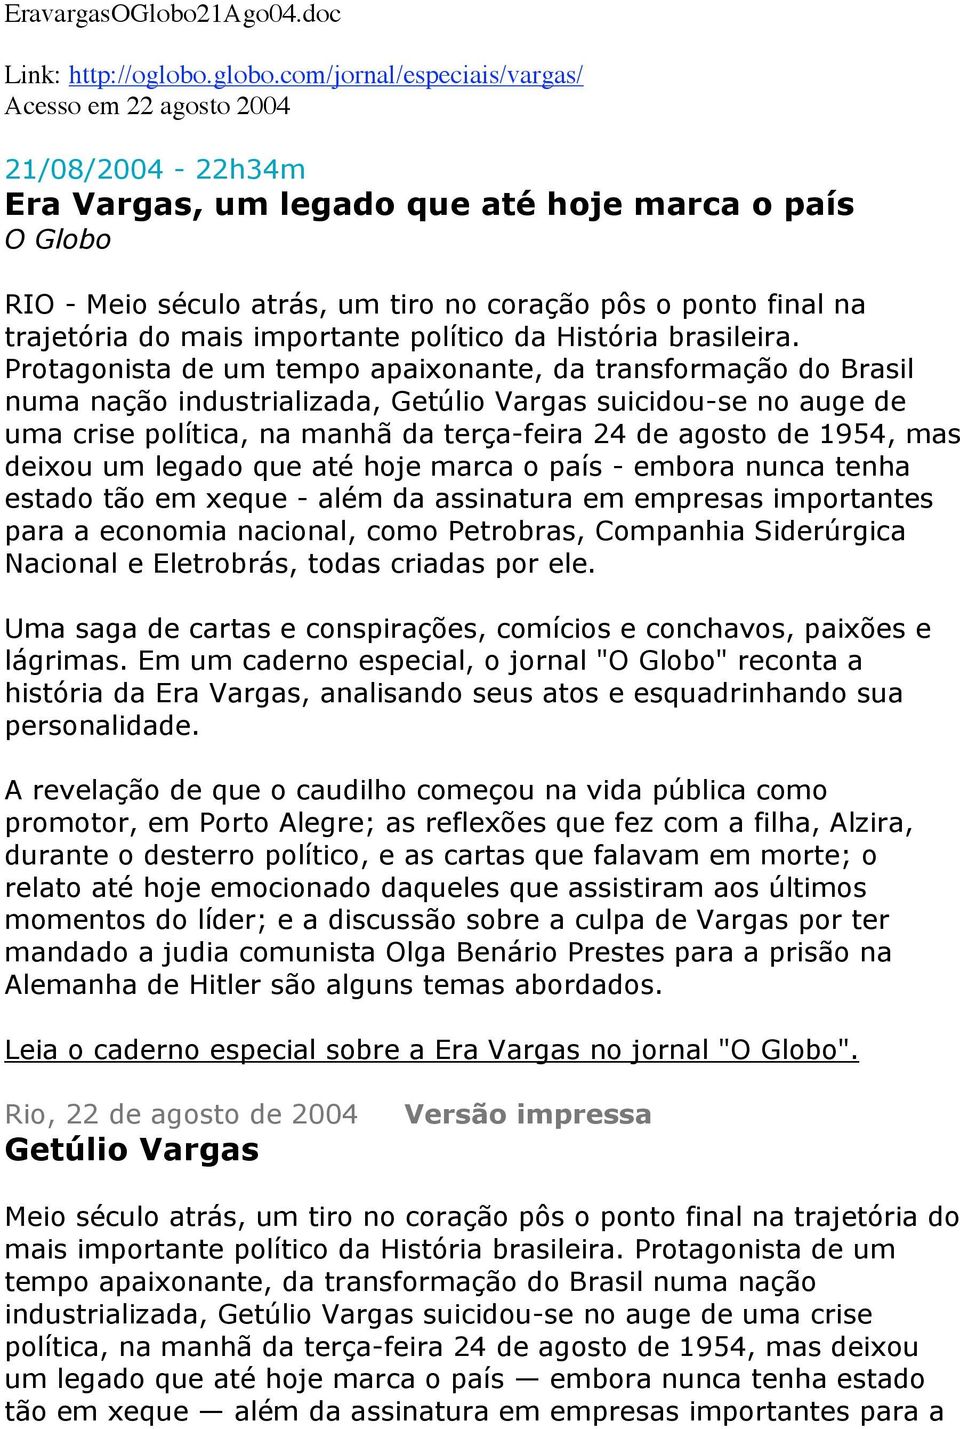 com/jornal/especiais/vargas/ Acesso em 22 agosto 2004 21/08/2004-22h34m Era Vargas, um legado que até hoje marca o país O Globo RIO - Meio século atrás, um tiro no coração pôs o ponto final na